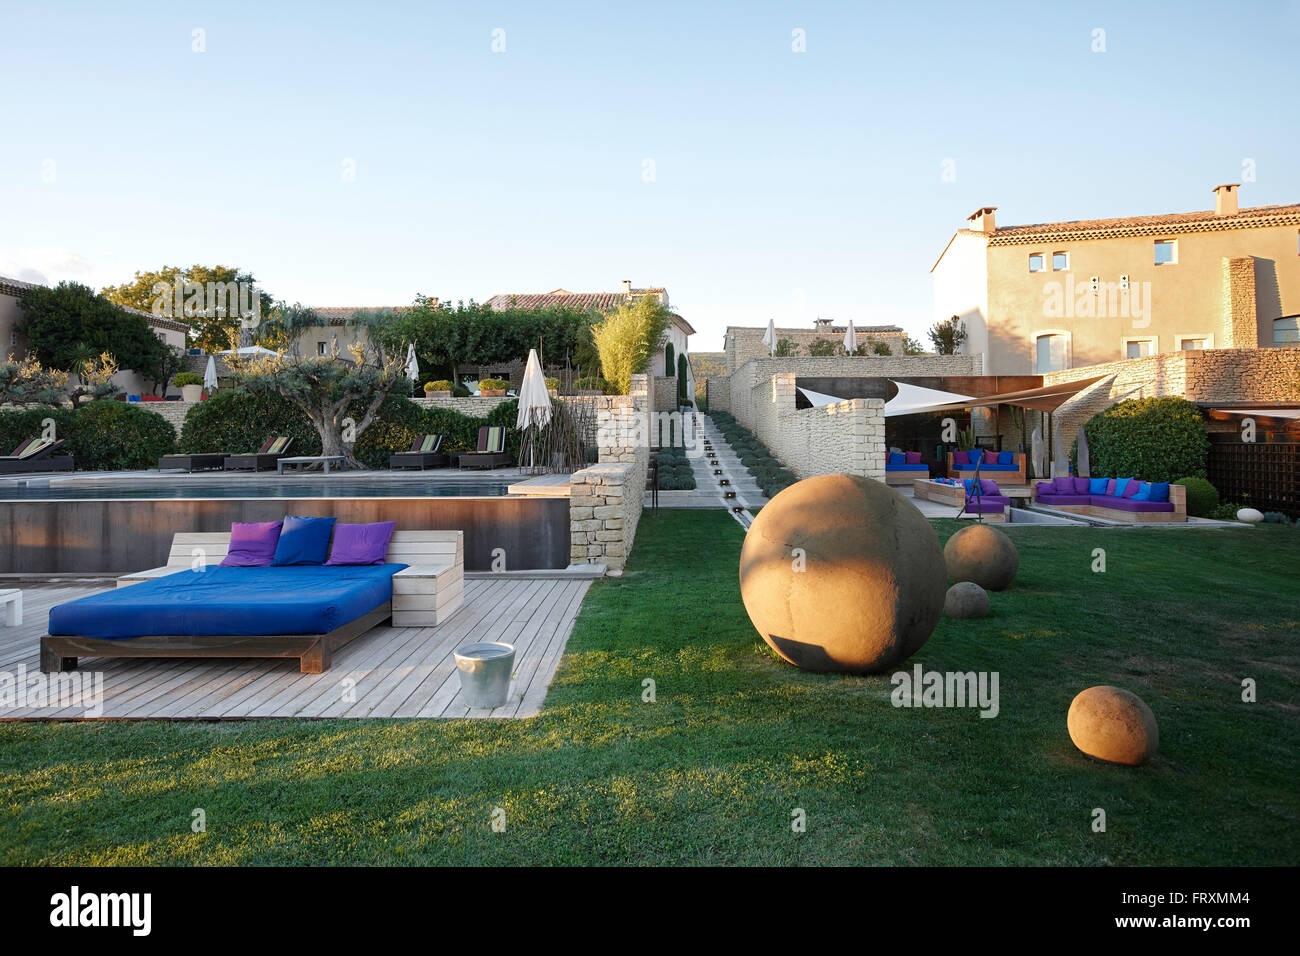 Salon-terrasse avec transats à la piscine de l'hôtel, Saint-Saturnin-les-Apt, Provence, France Banque D'Images